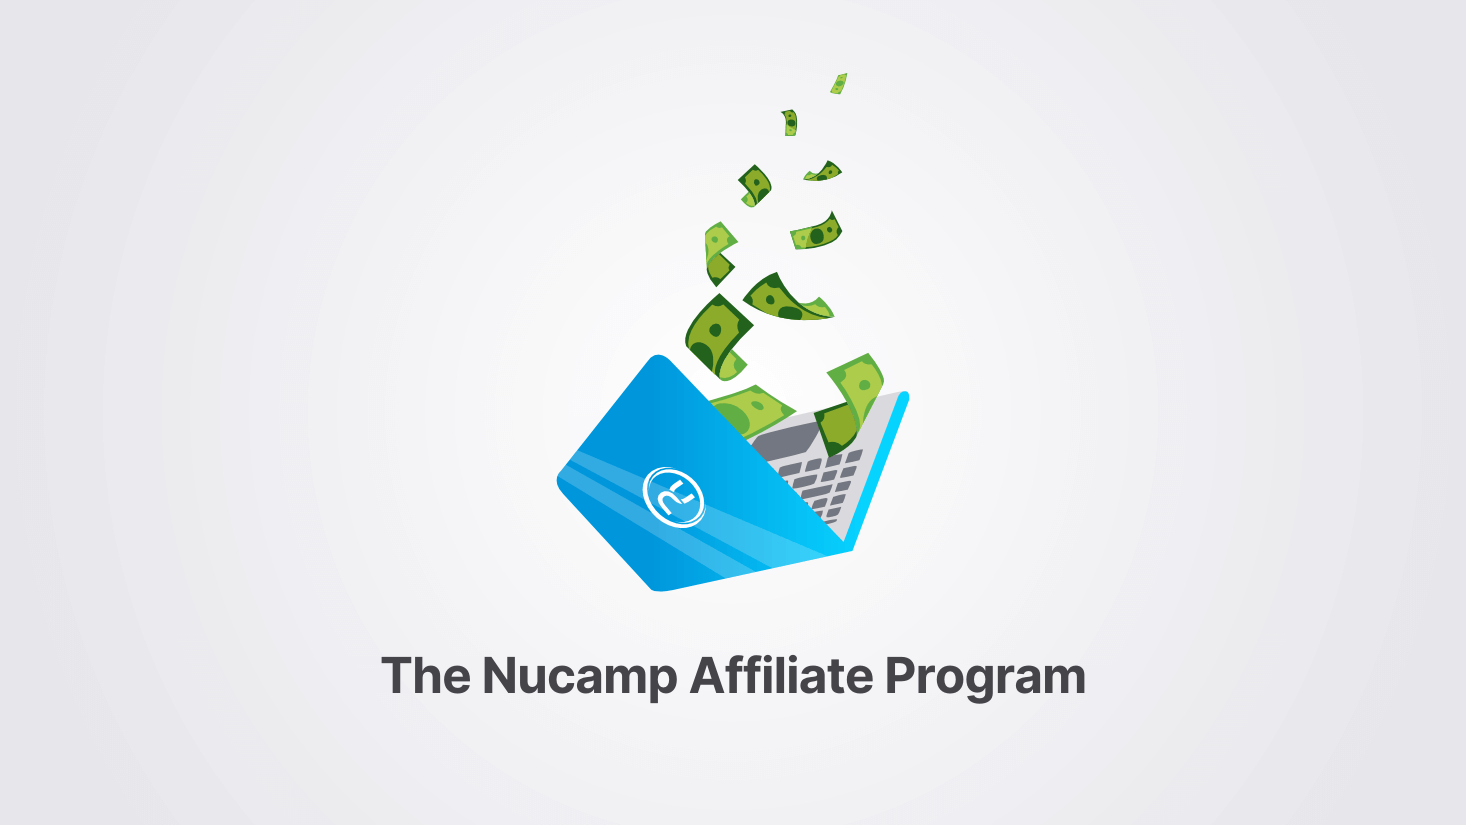 Nucamp Affiliate Program illustration